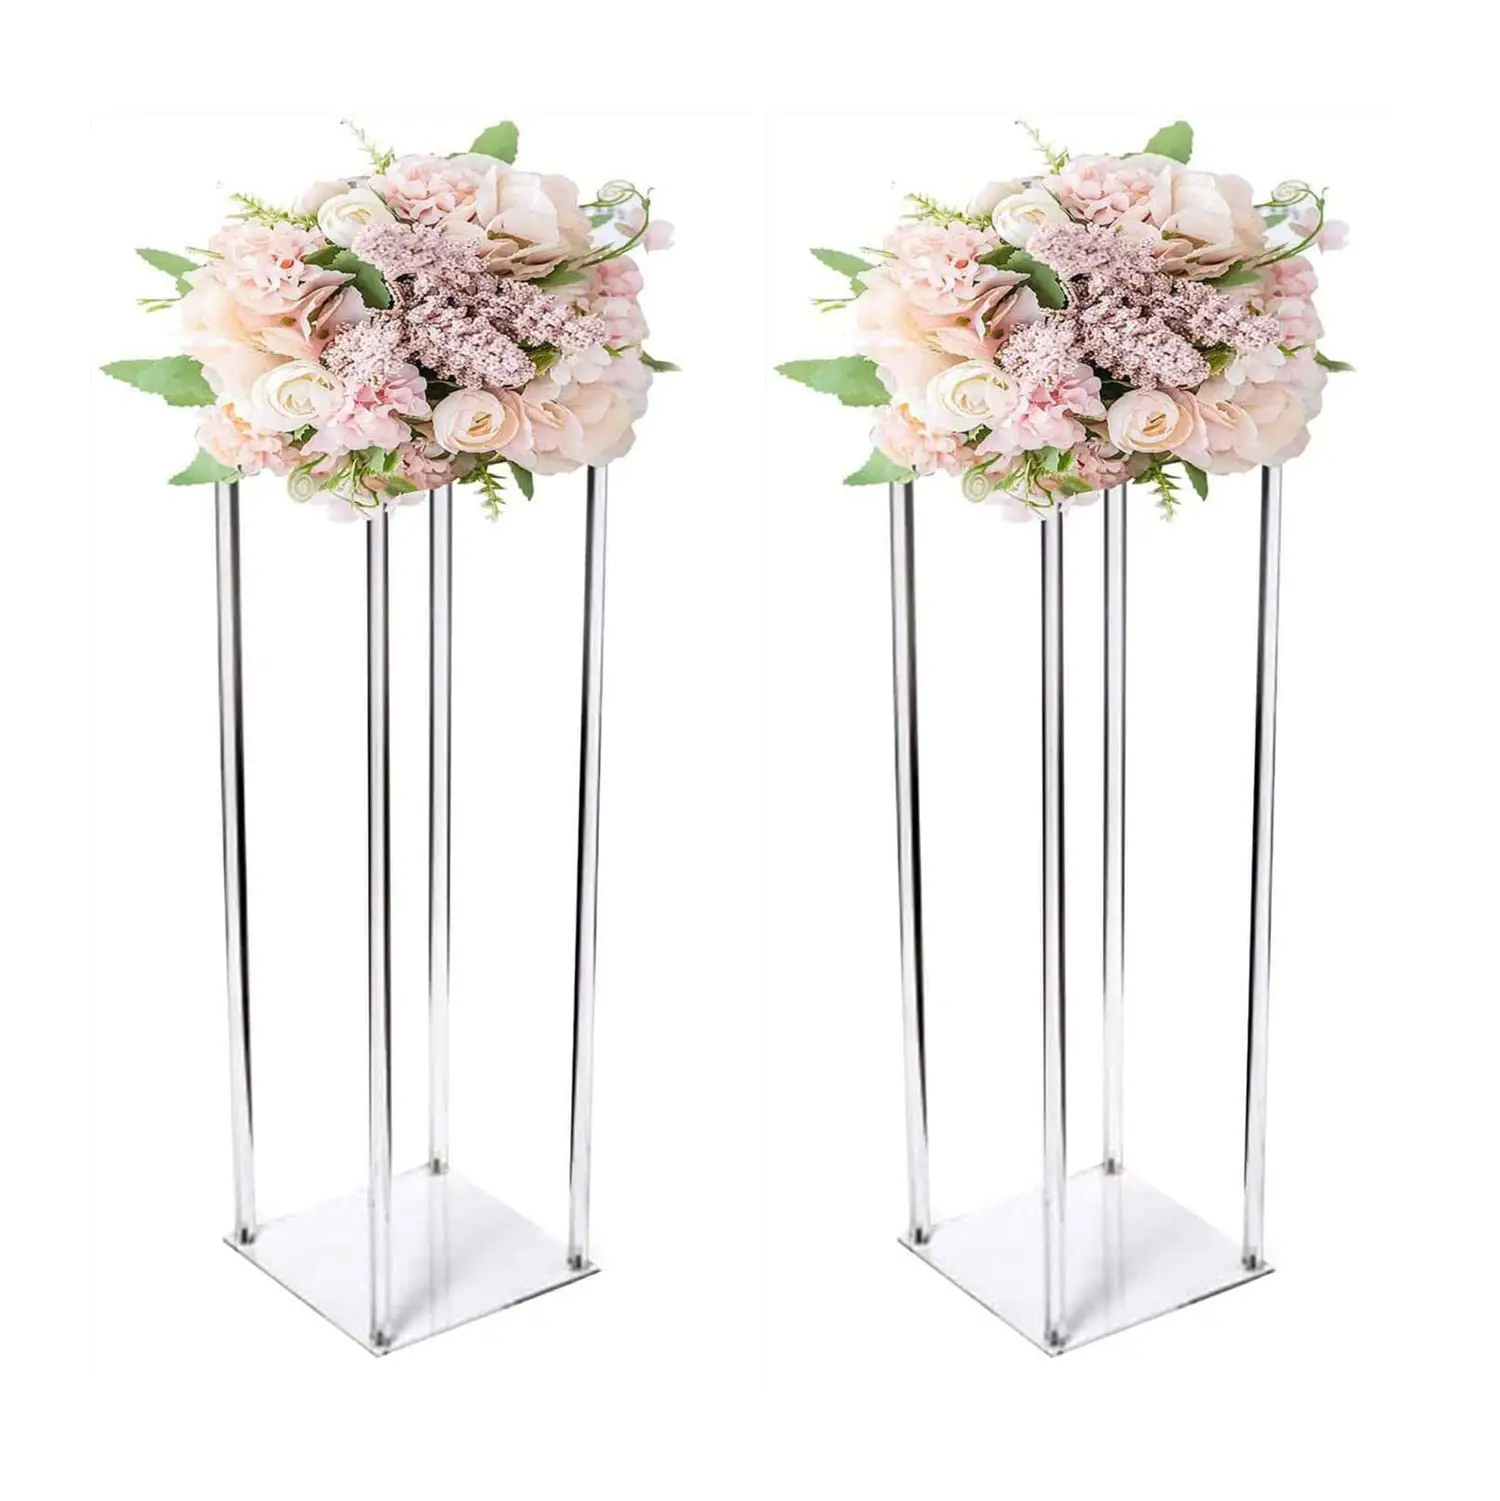 Fournisseur de mariage centres de table de mariage de luxe décorations acrylique fleur support présentoir décoration de mariage